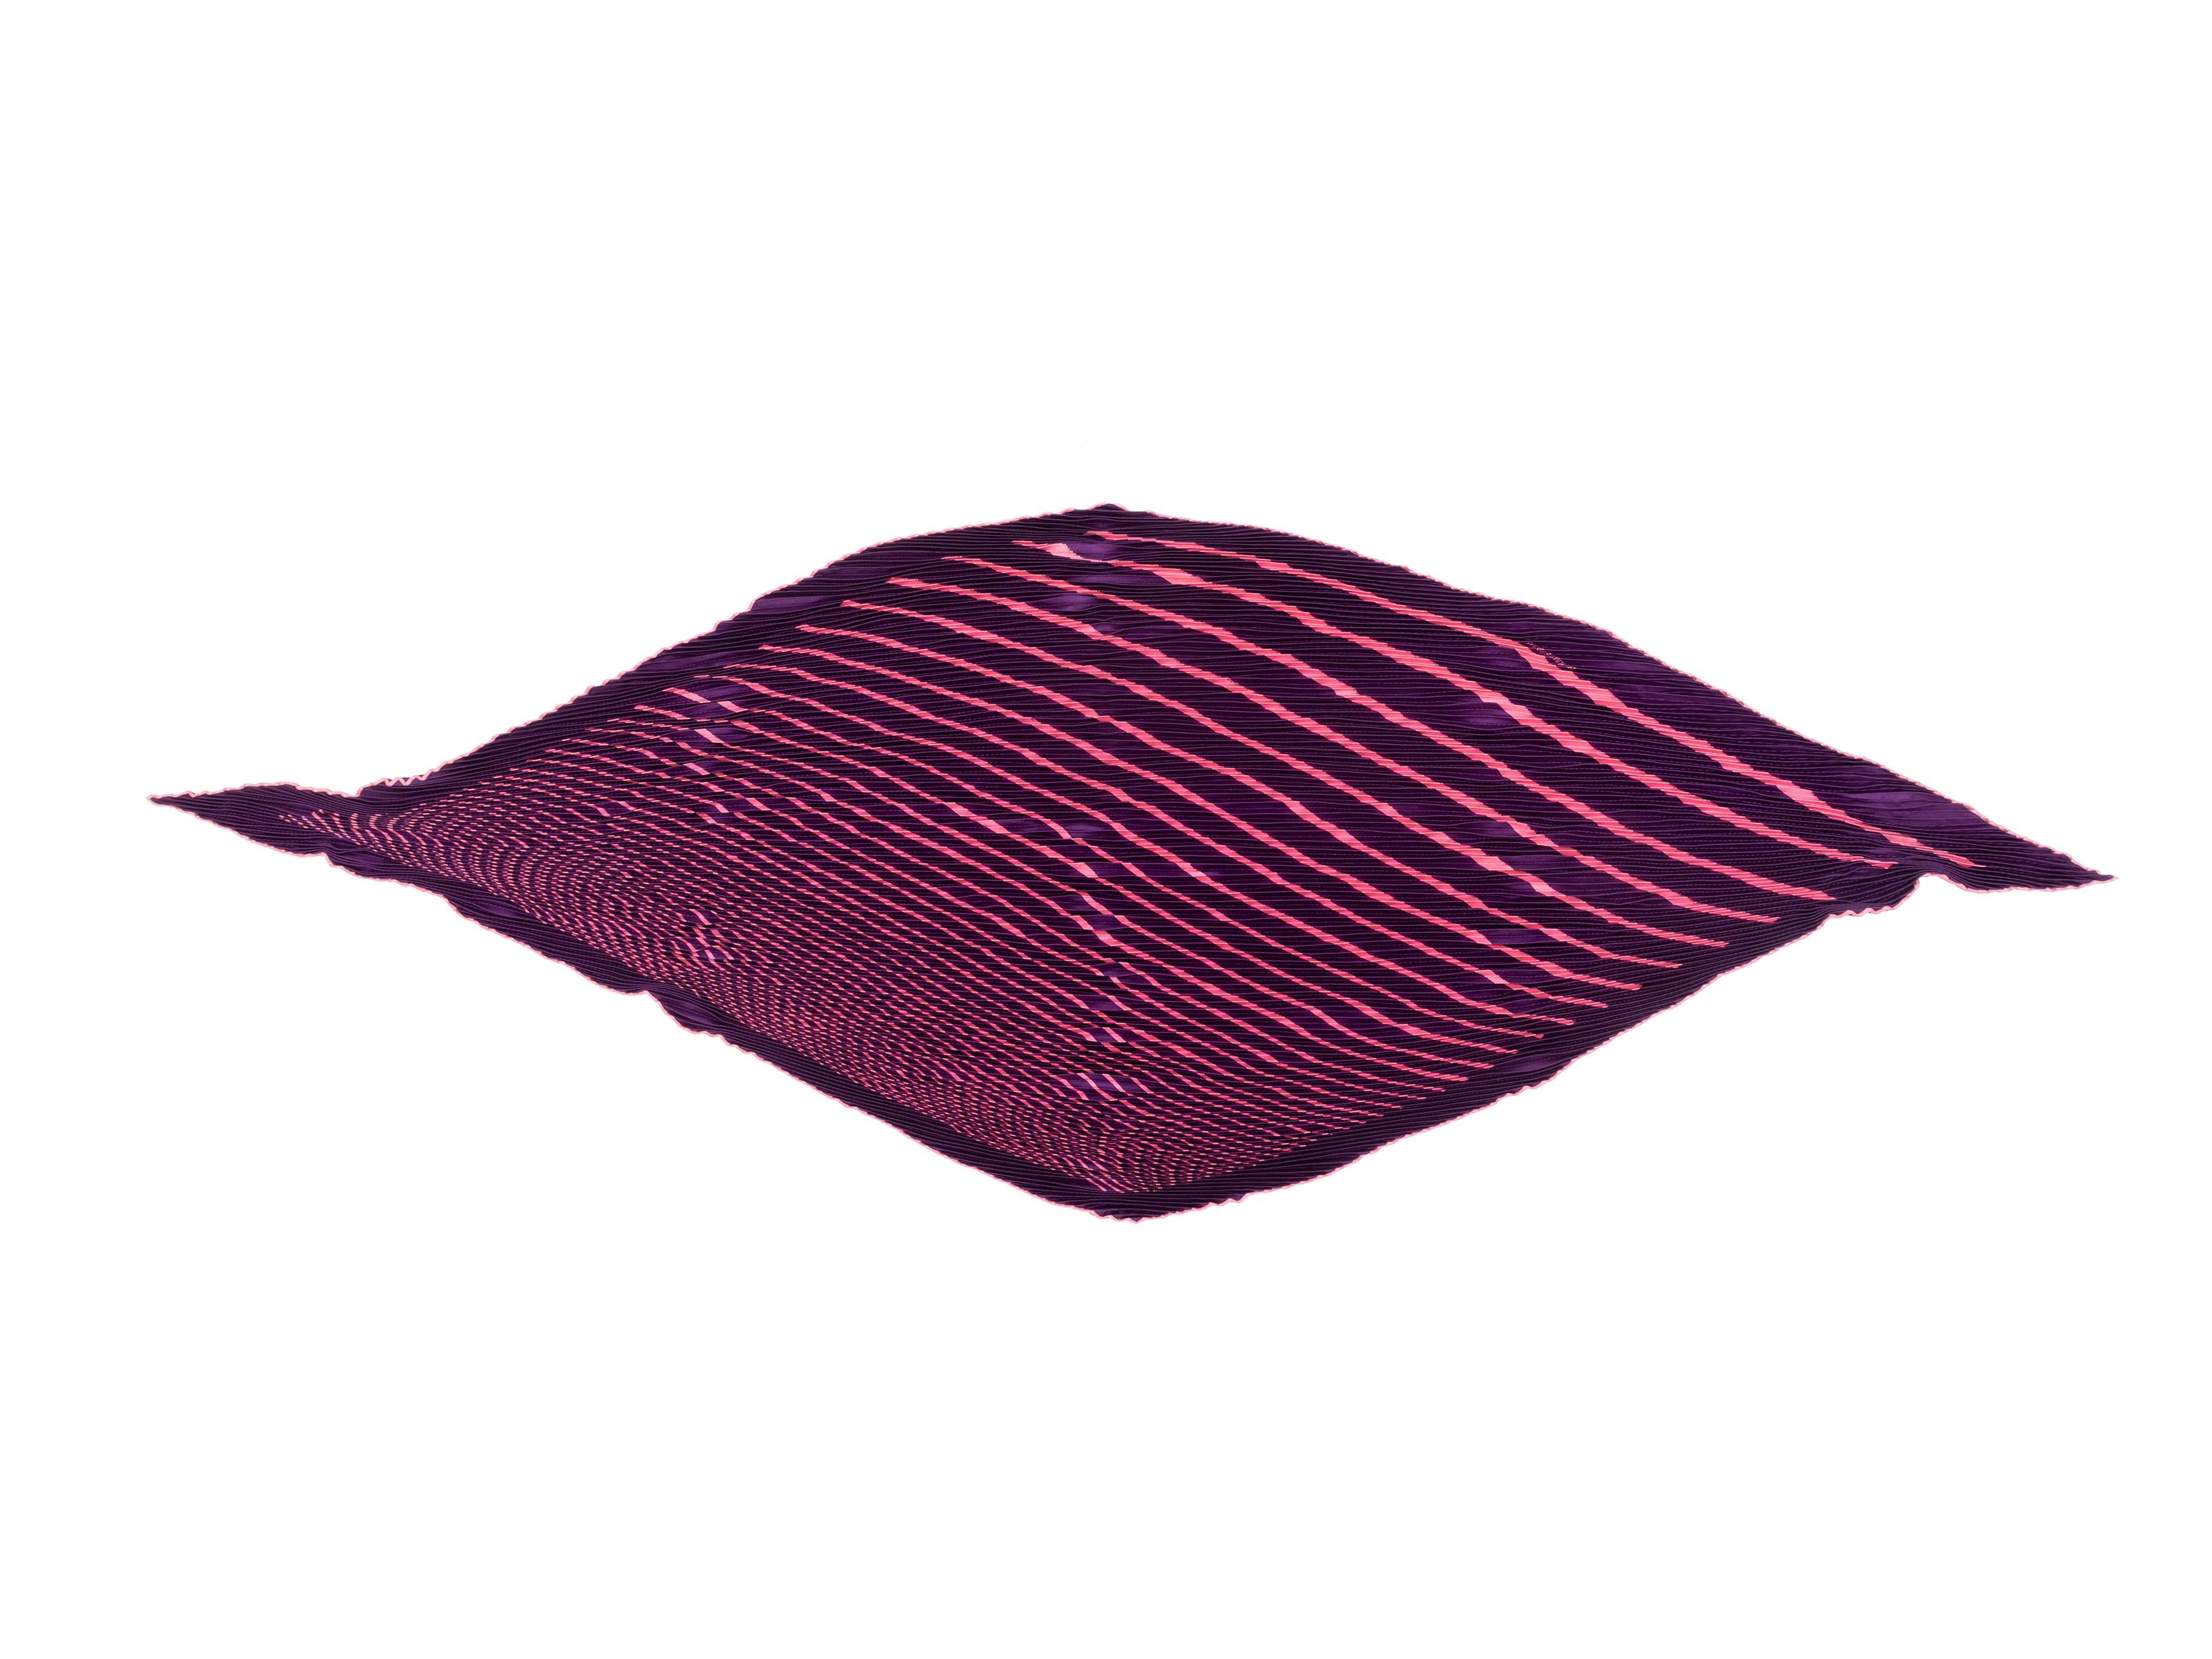  Echarpe plissée en soie violette et rose d'Hermès. Imprimé rayé sur l'ensemble du corps. Longueur 55